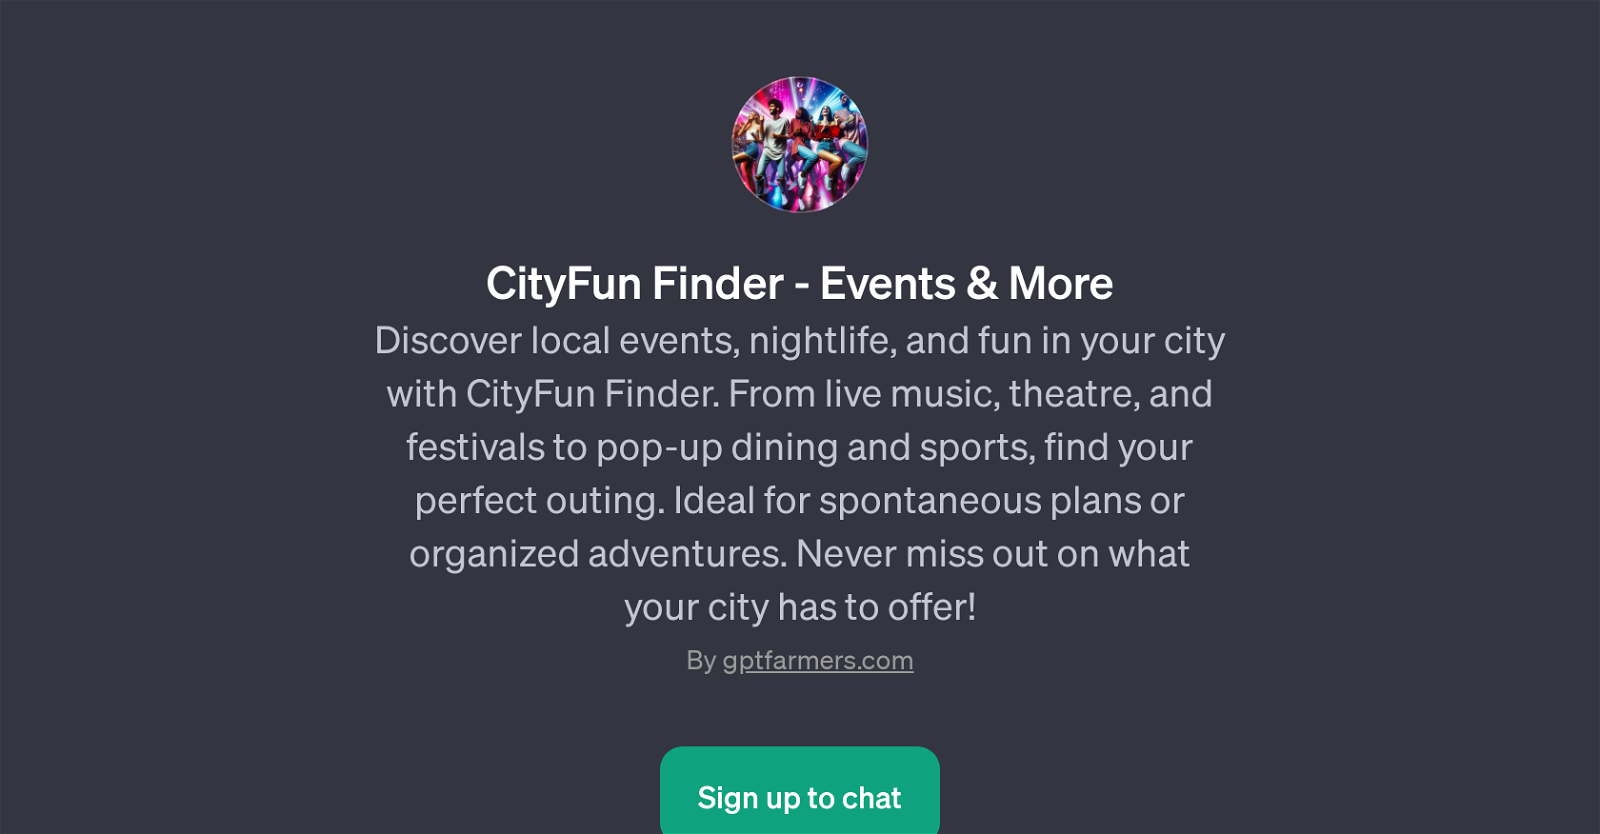 CityFun Finder website